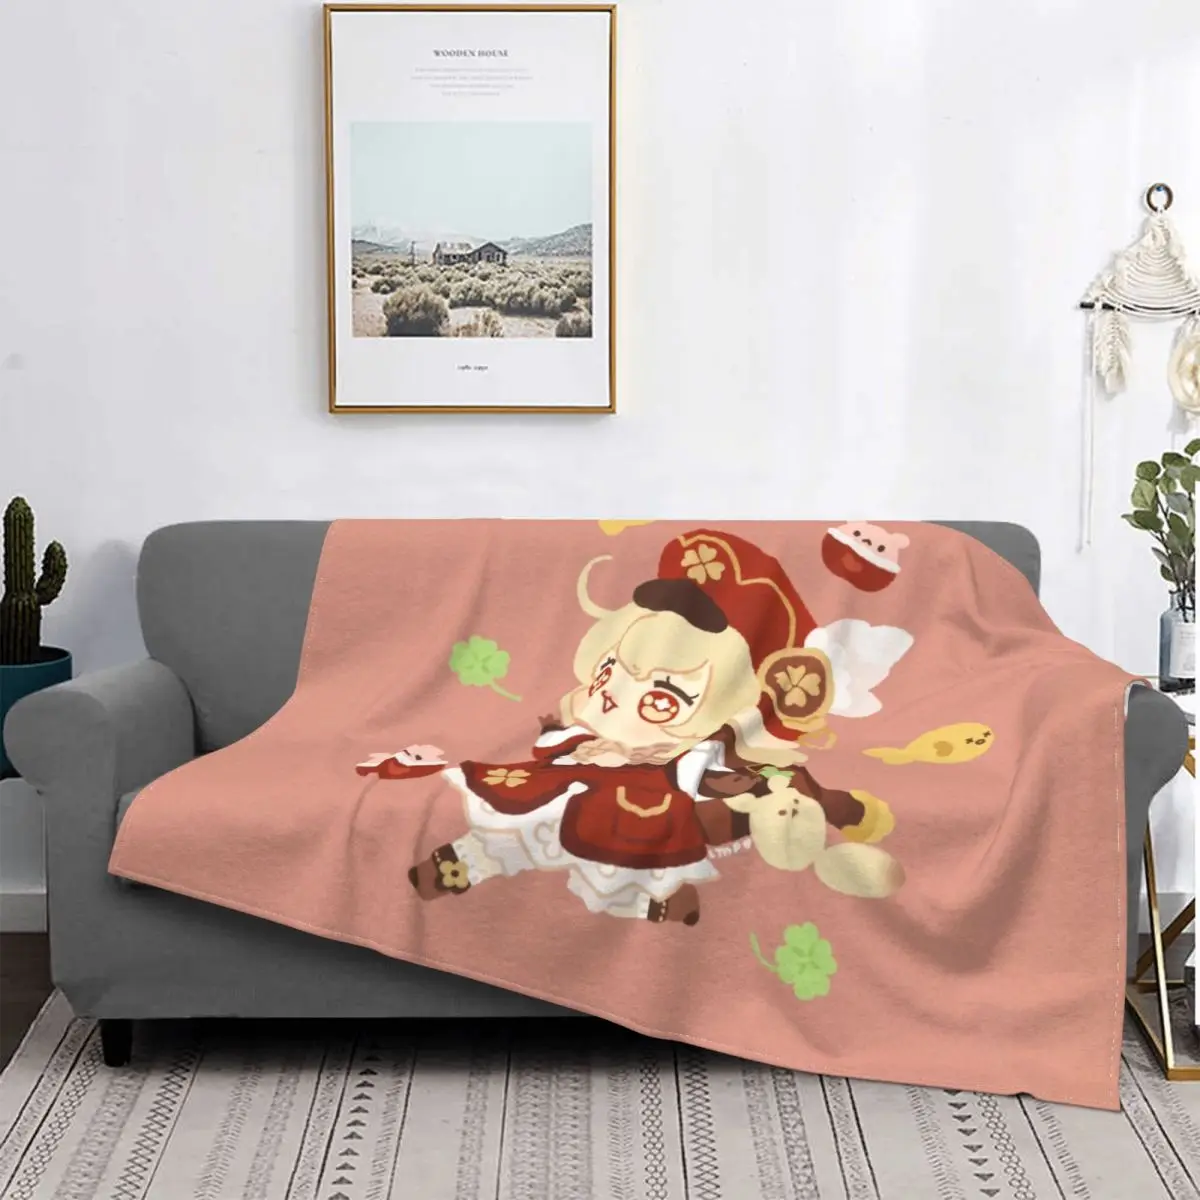 

Ударное аниме одеяло Klee Genshin, бархатное милое легкое покрывало s для автомобиля, дивана, кровати, коврика